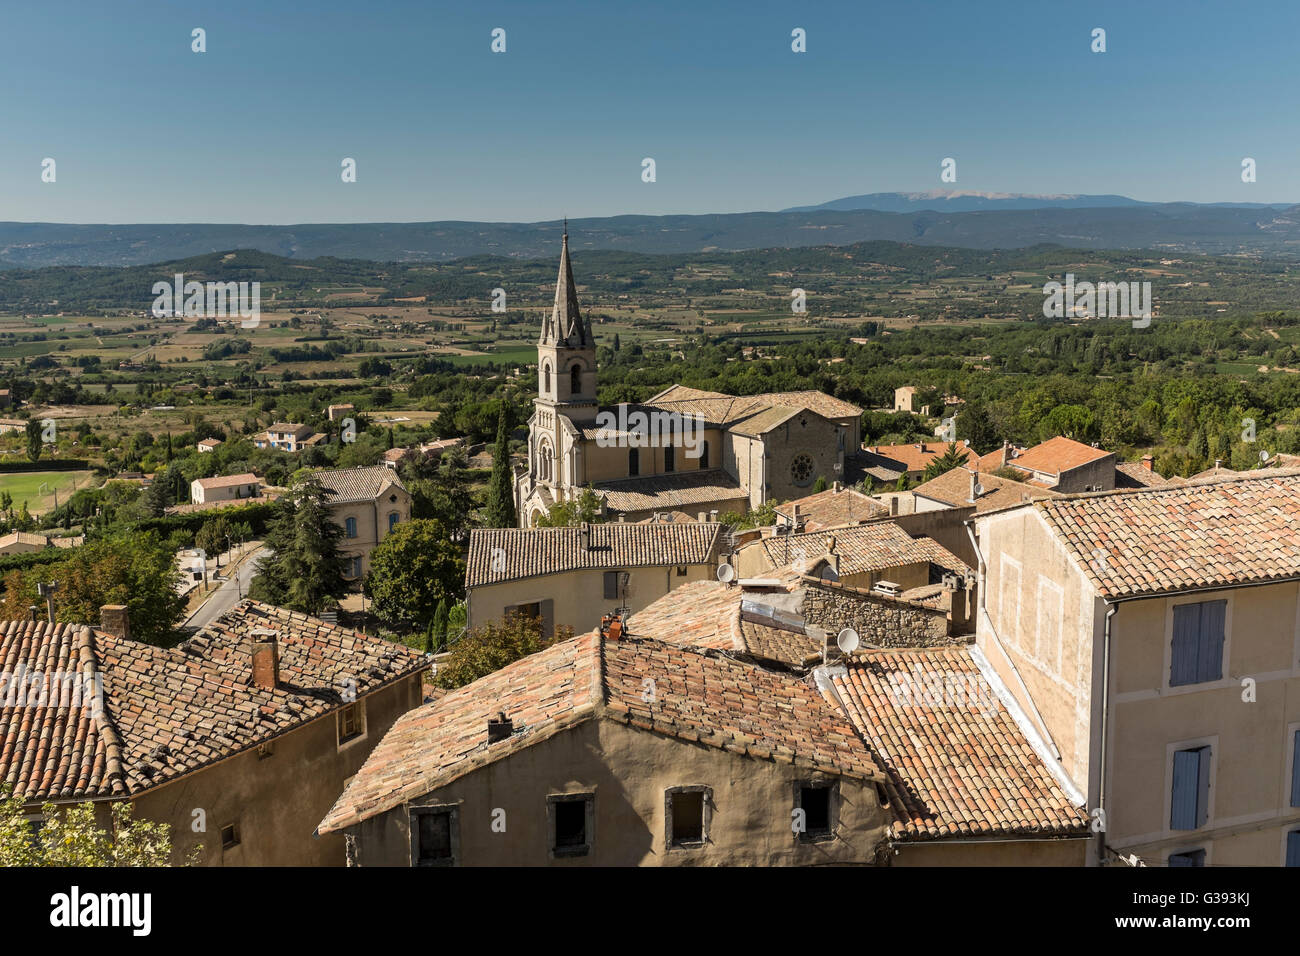 Vue sur le village de Bonnieux, Luberon, Vaucluse, Provence-Alpes-Côte d'Azur, France Banque D'Images